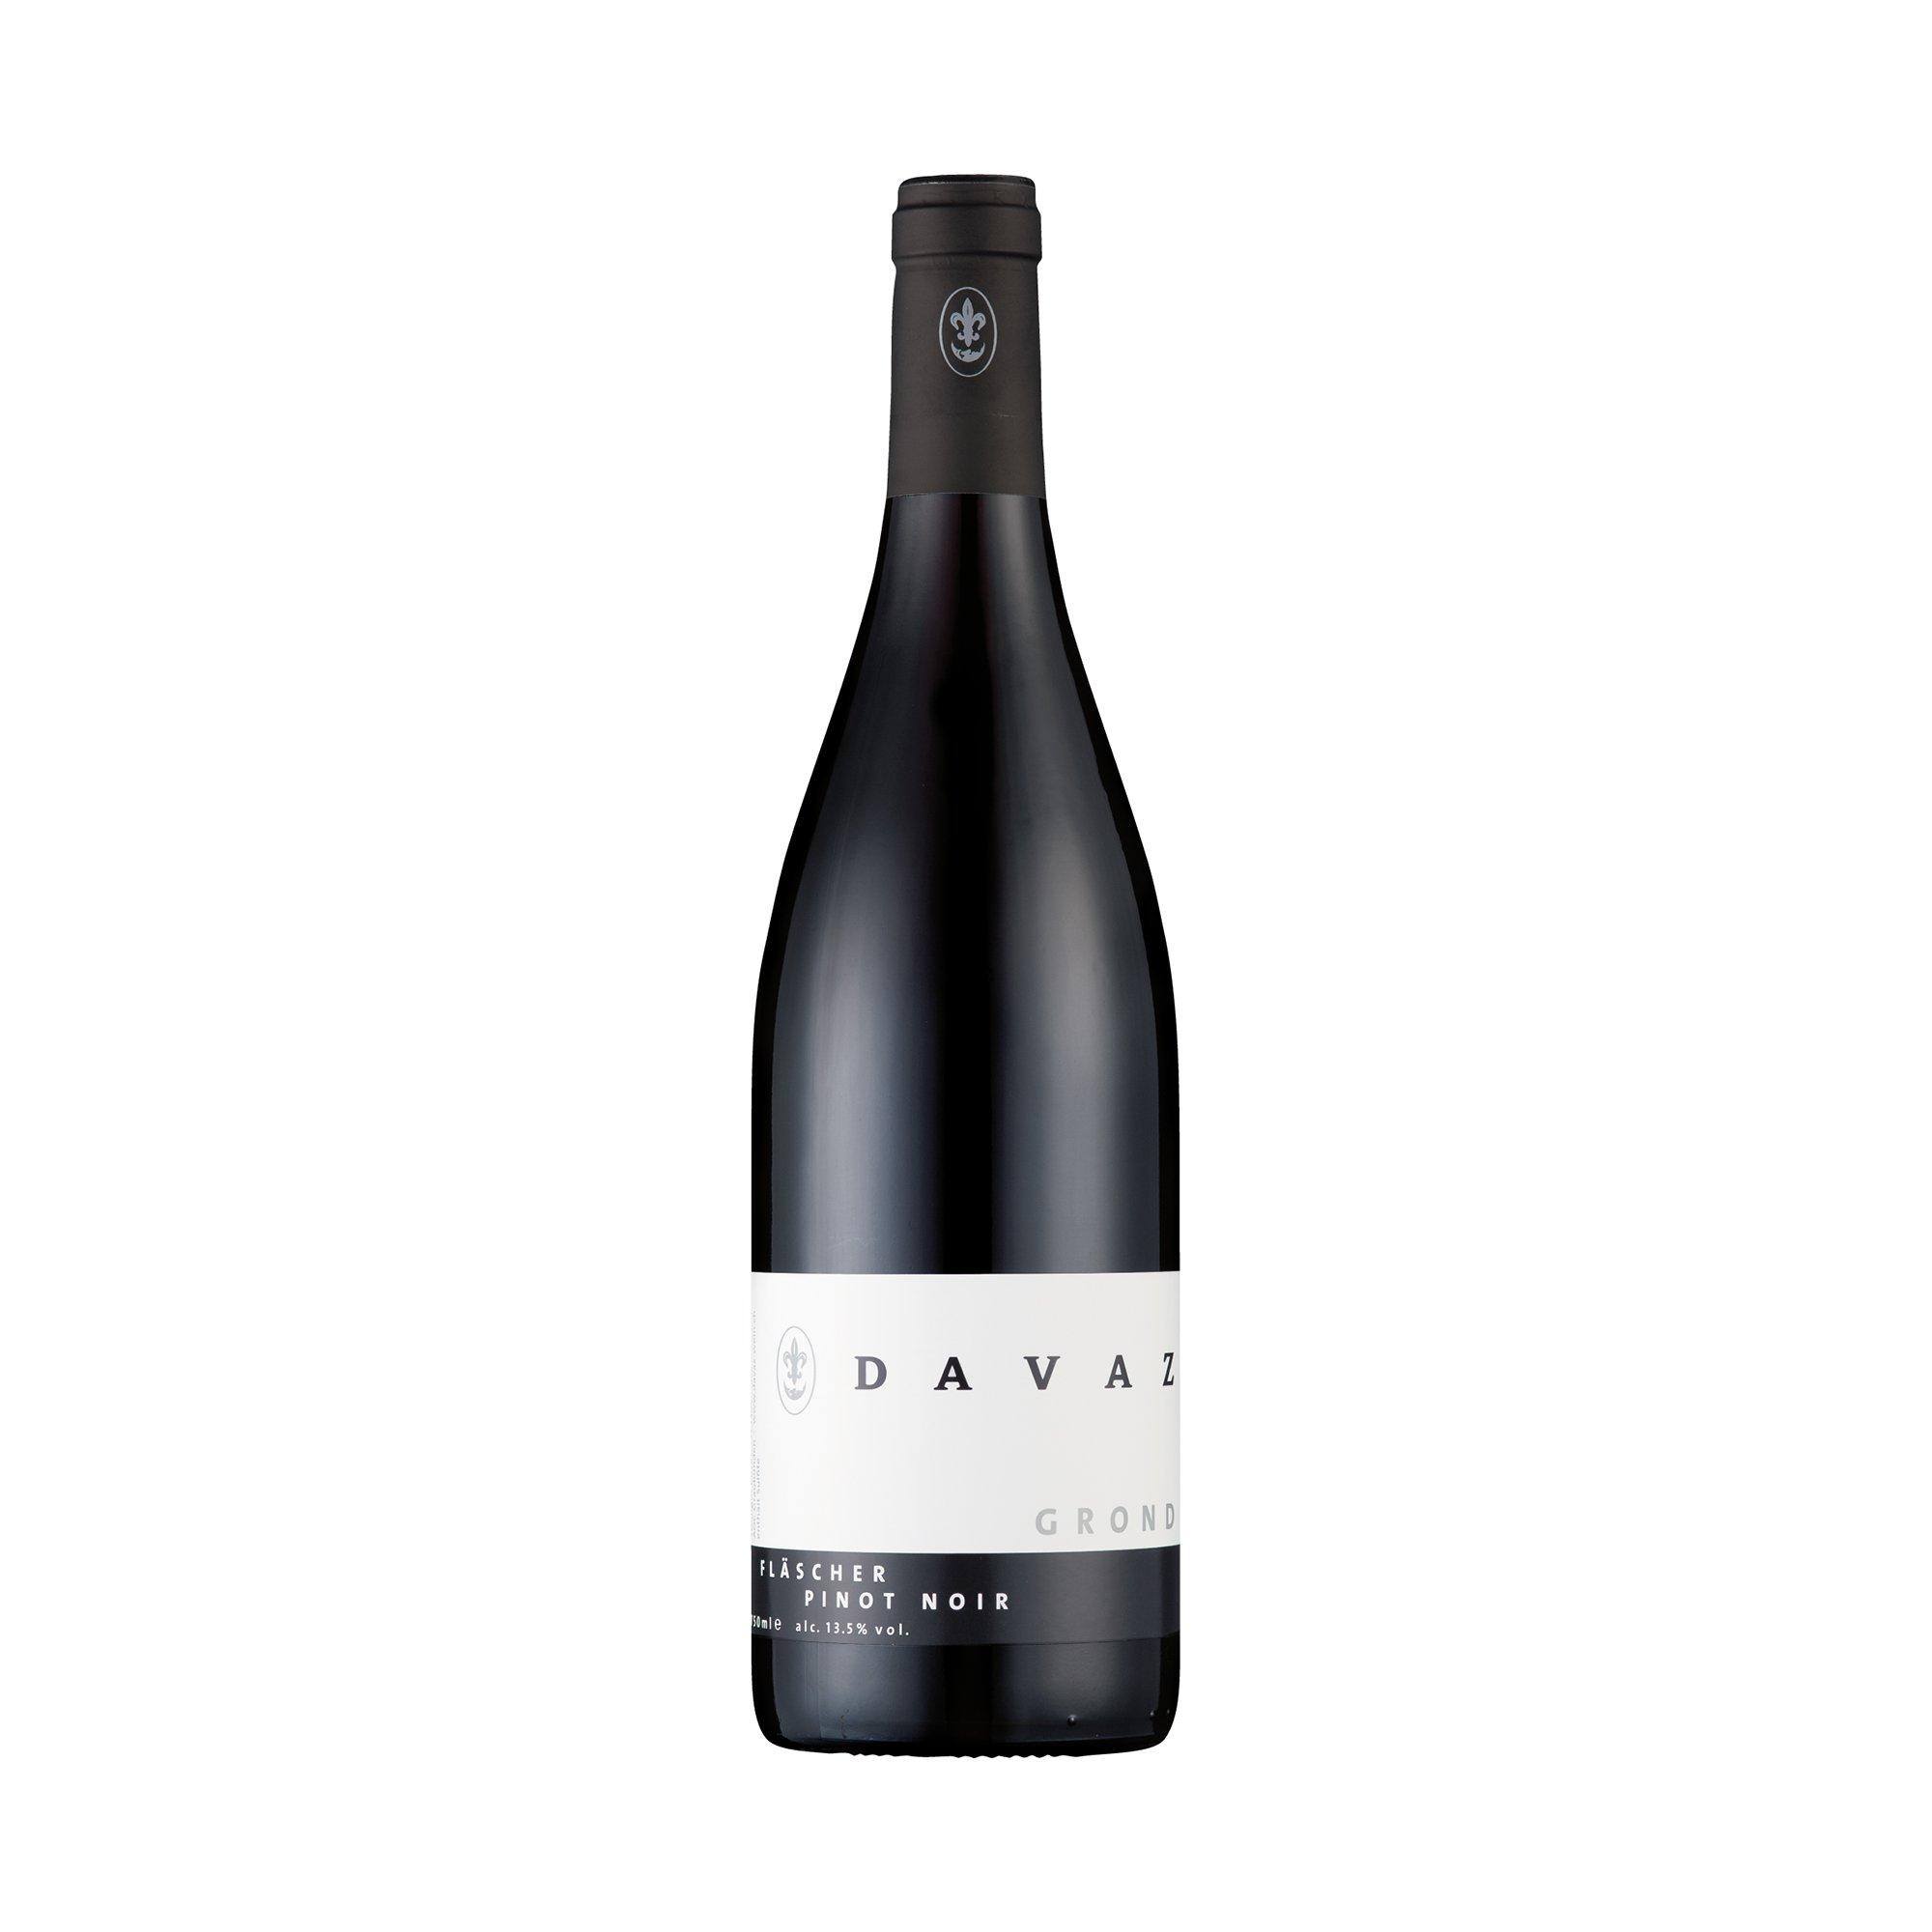 Image of DAVAZ 2020, Pinot Noir Grond, Graubünden AOC - 75 cl